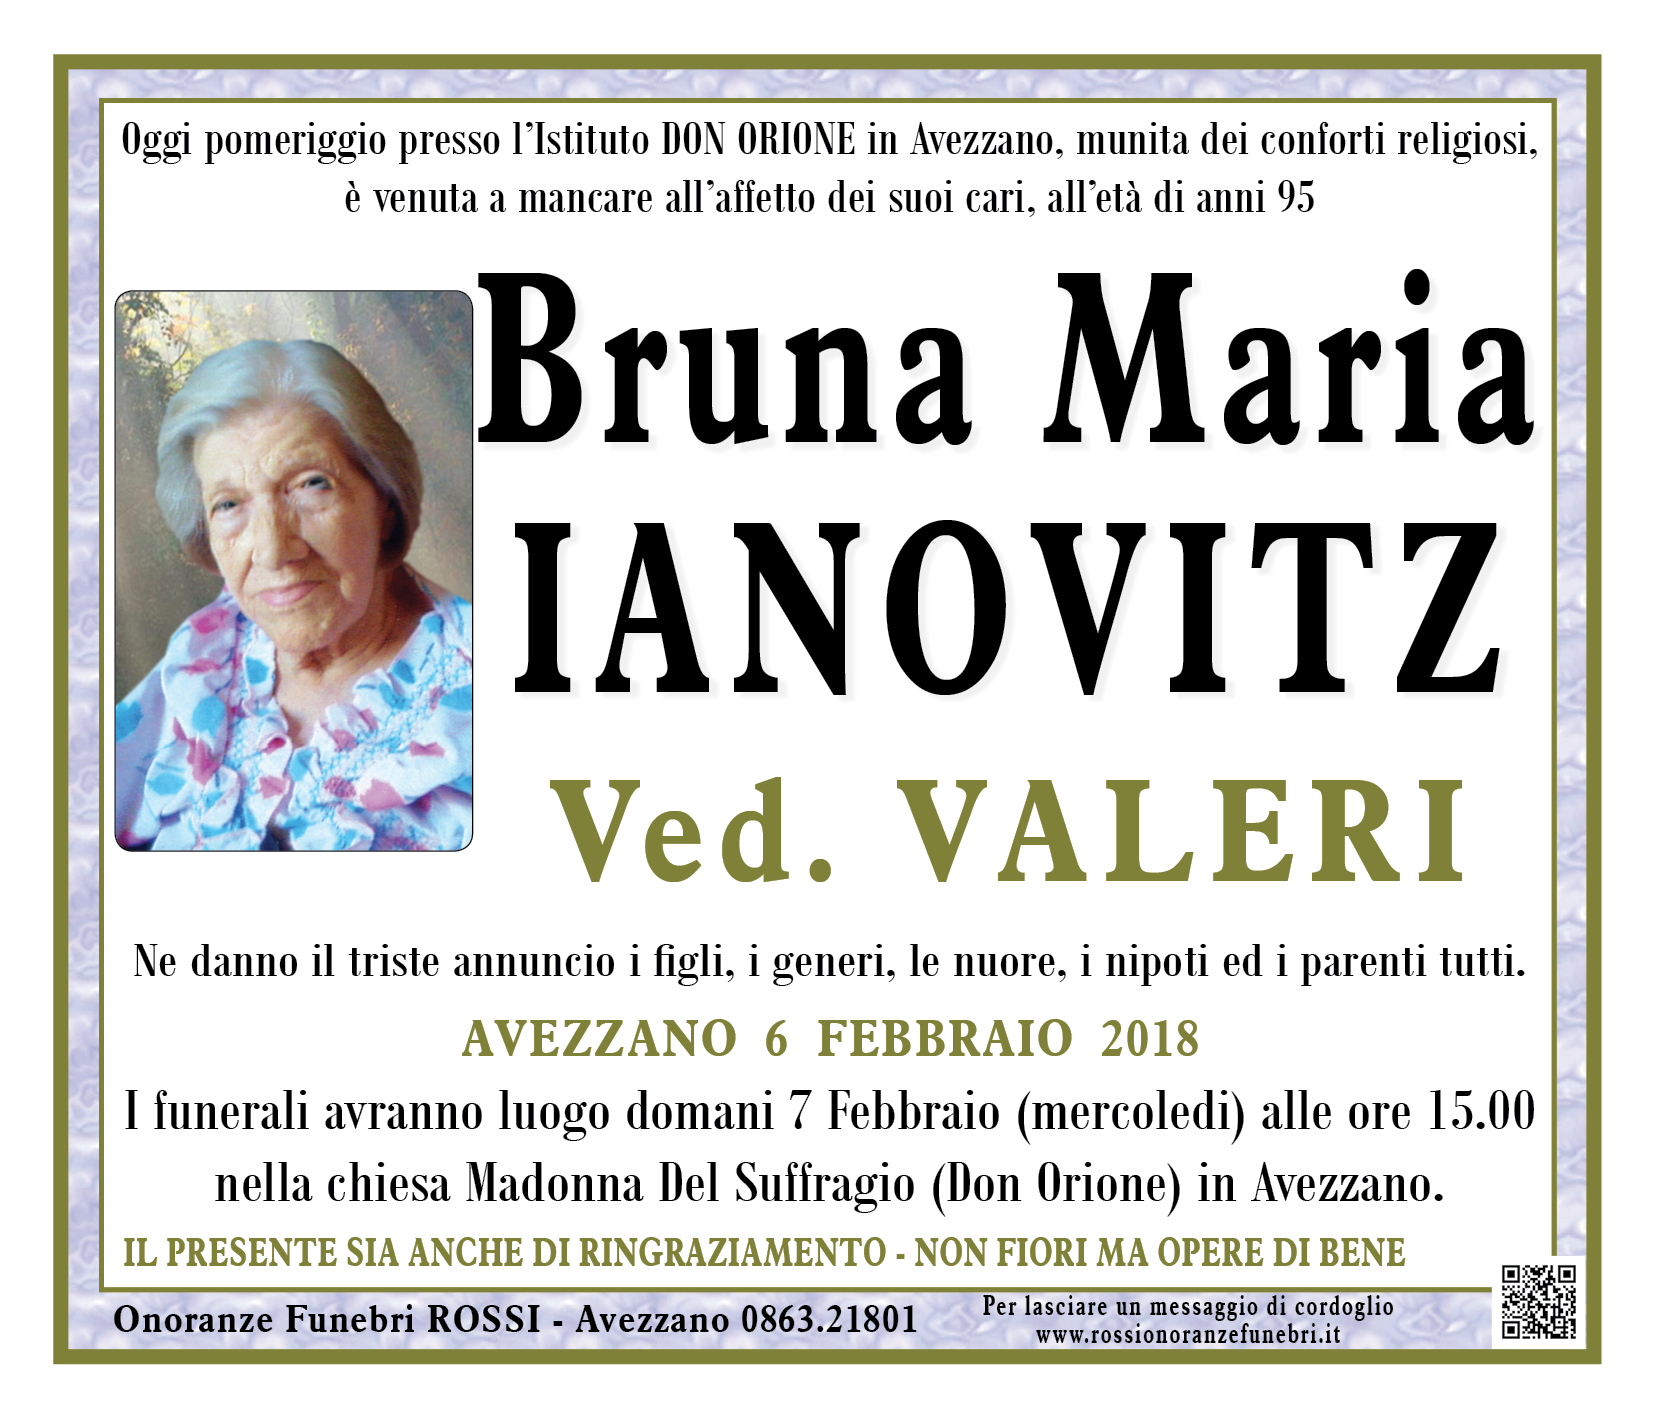 Bruna Maria Ianovitz